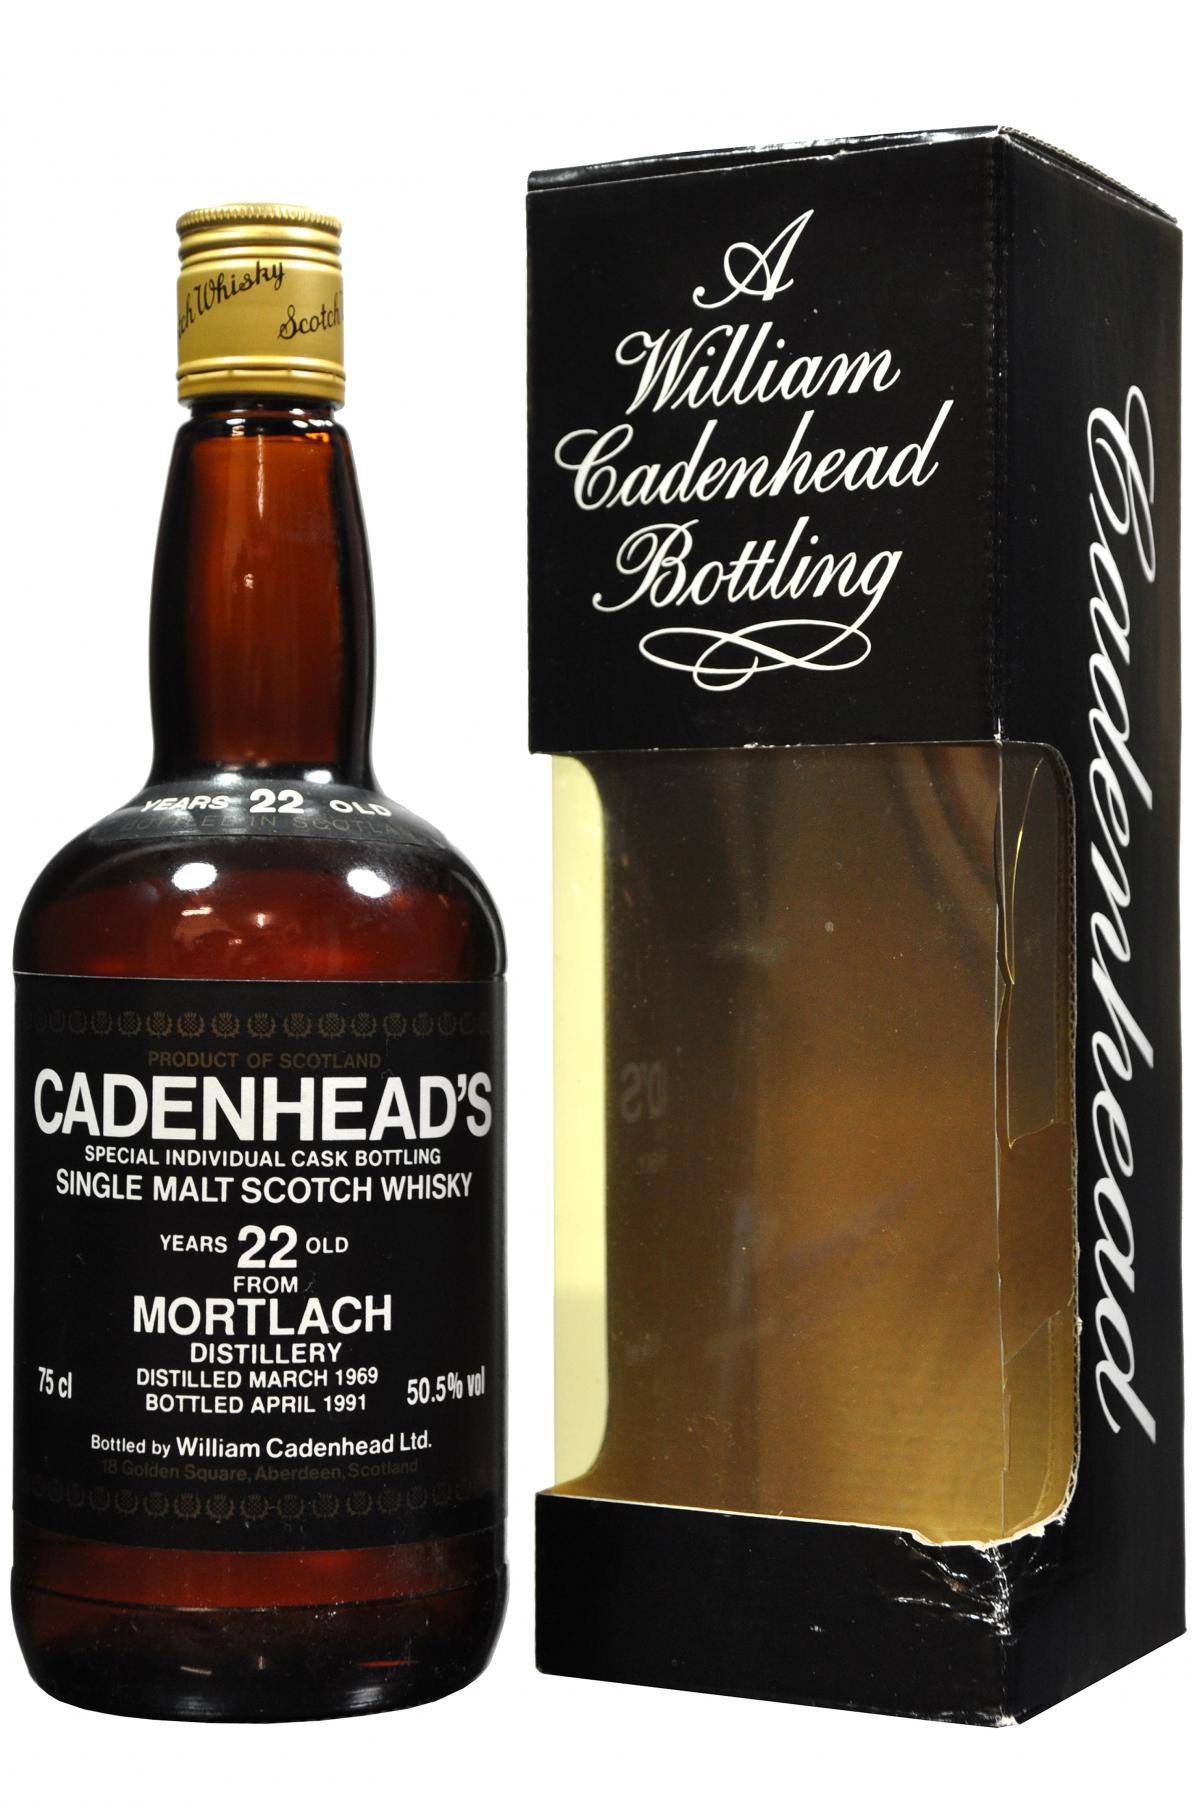 mortlach distilled 1969, 22 year old, bottled 1991 by wm cadenhead, speyside single malt scotch whisky whiskey